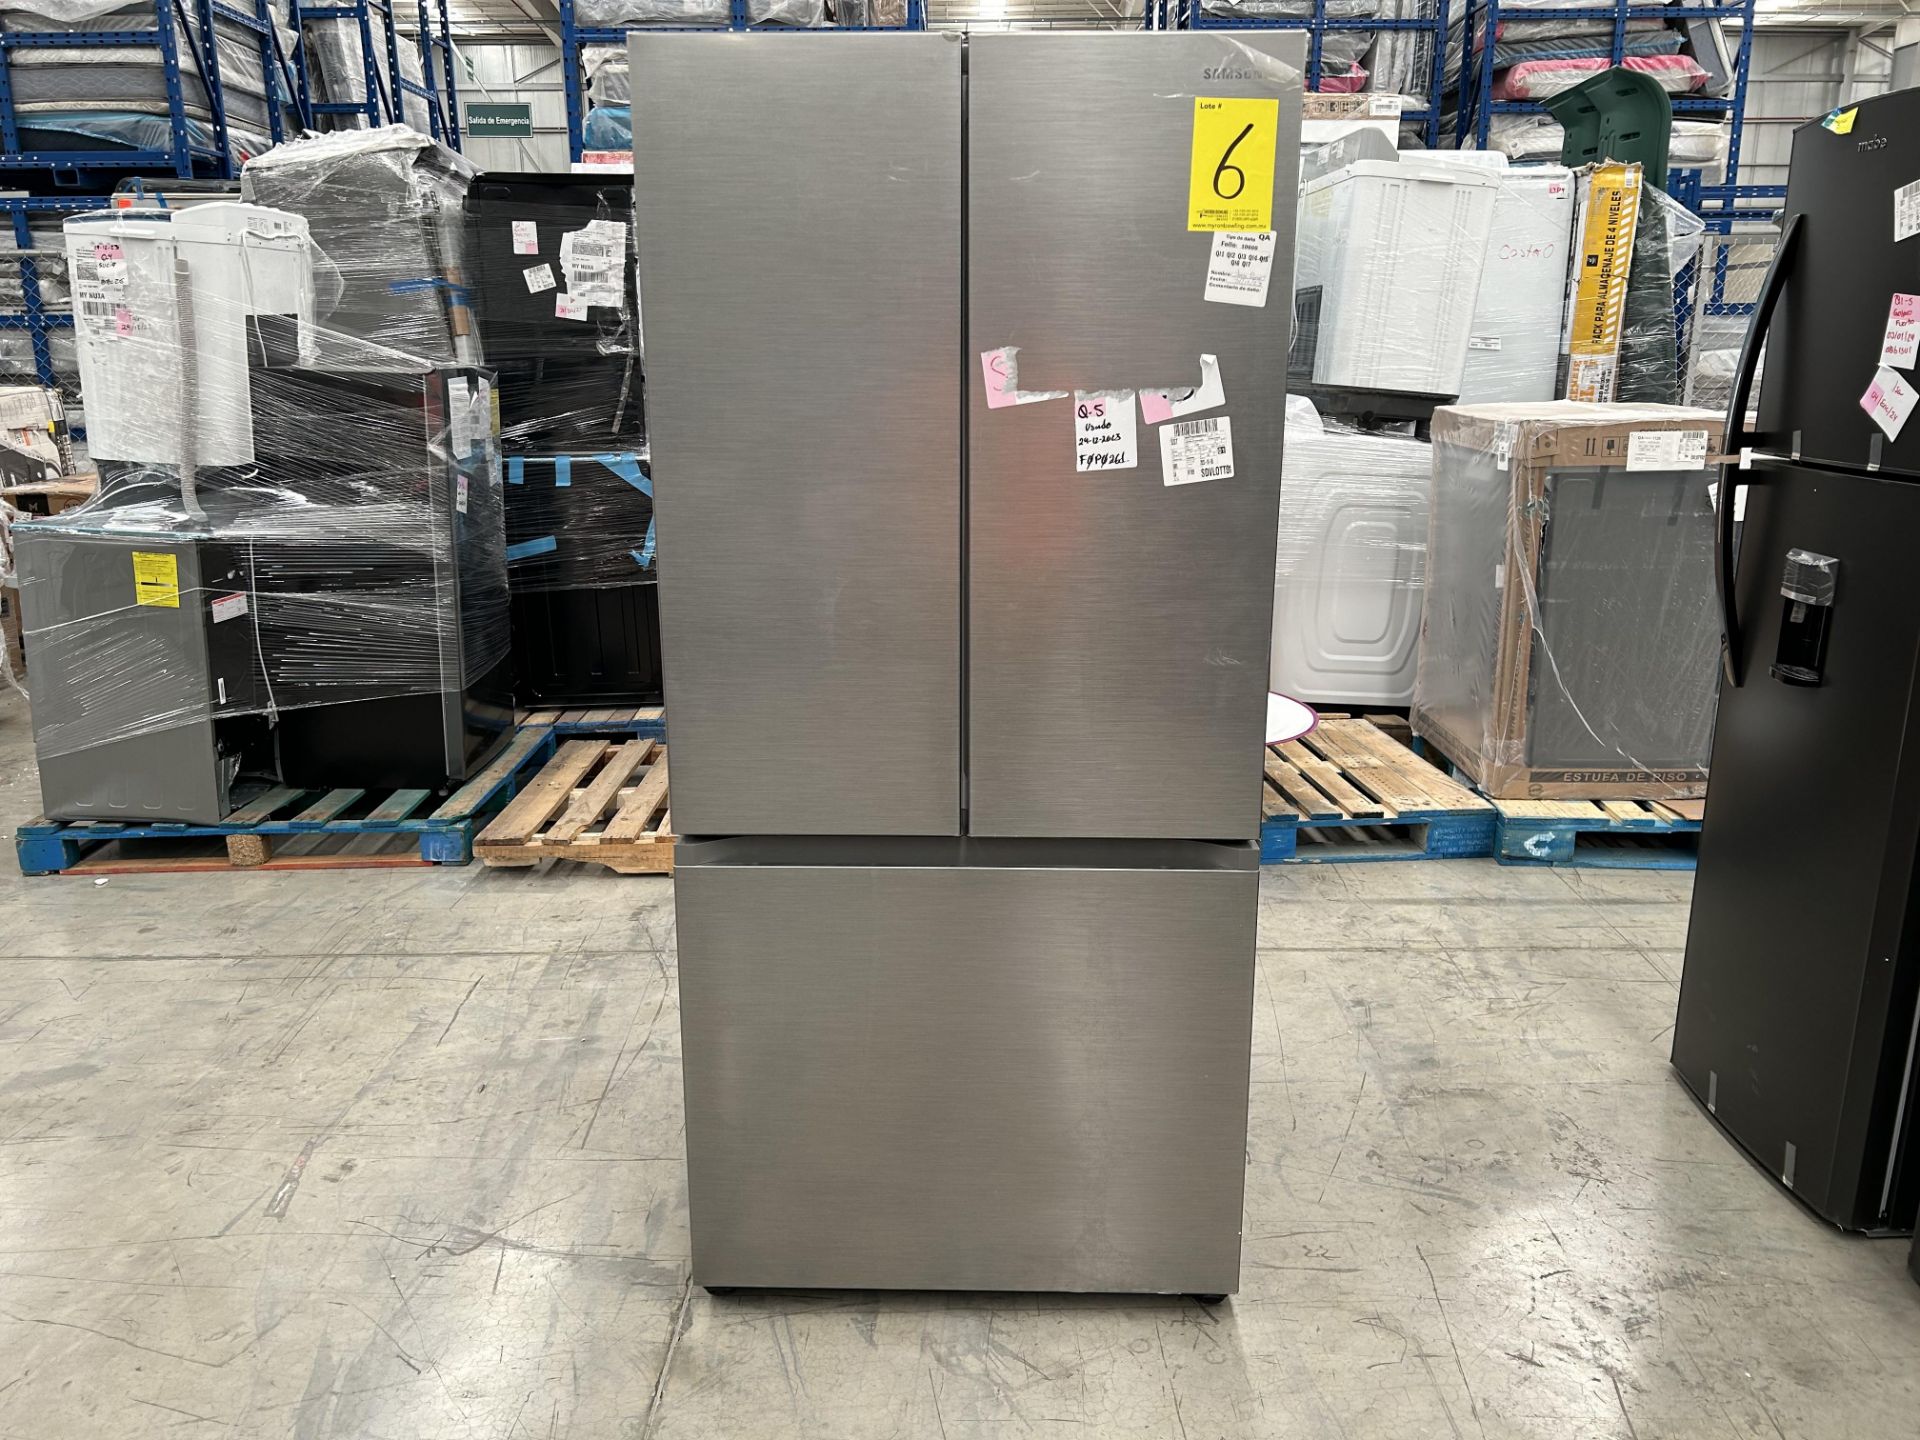 Lote de 1 Refrigerador Marca SAMSUNG, Modelo RF25C5151S9, Serie 0204N, Color GRIS (No se asegura su